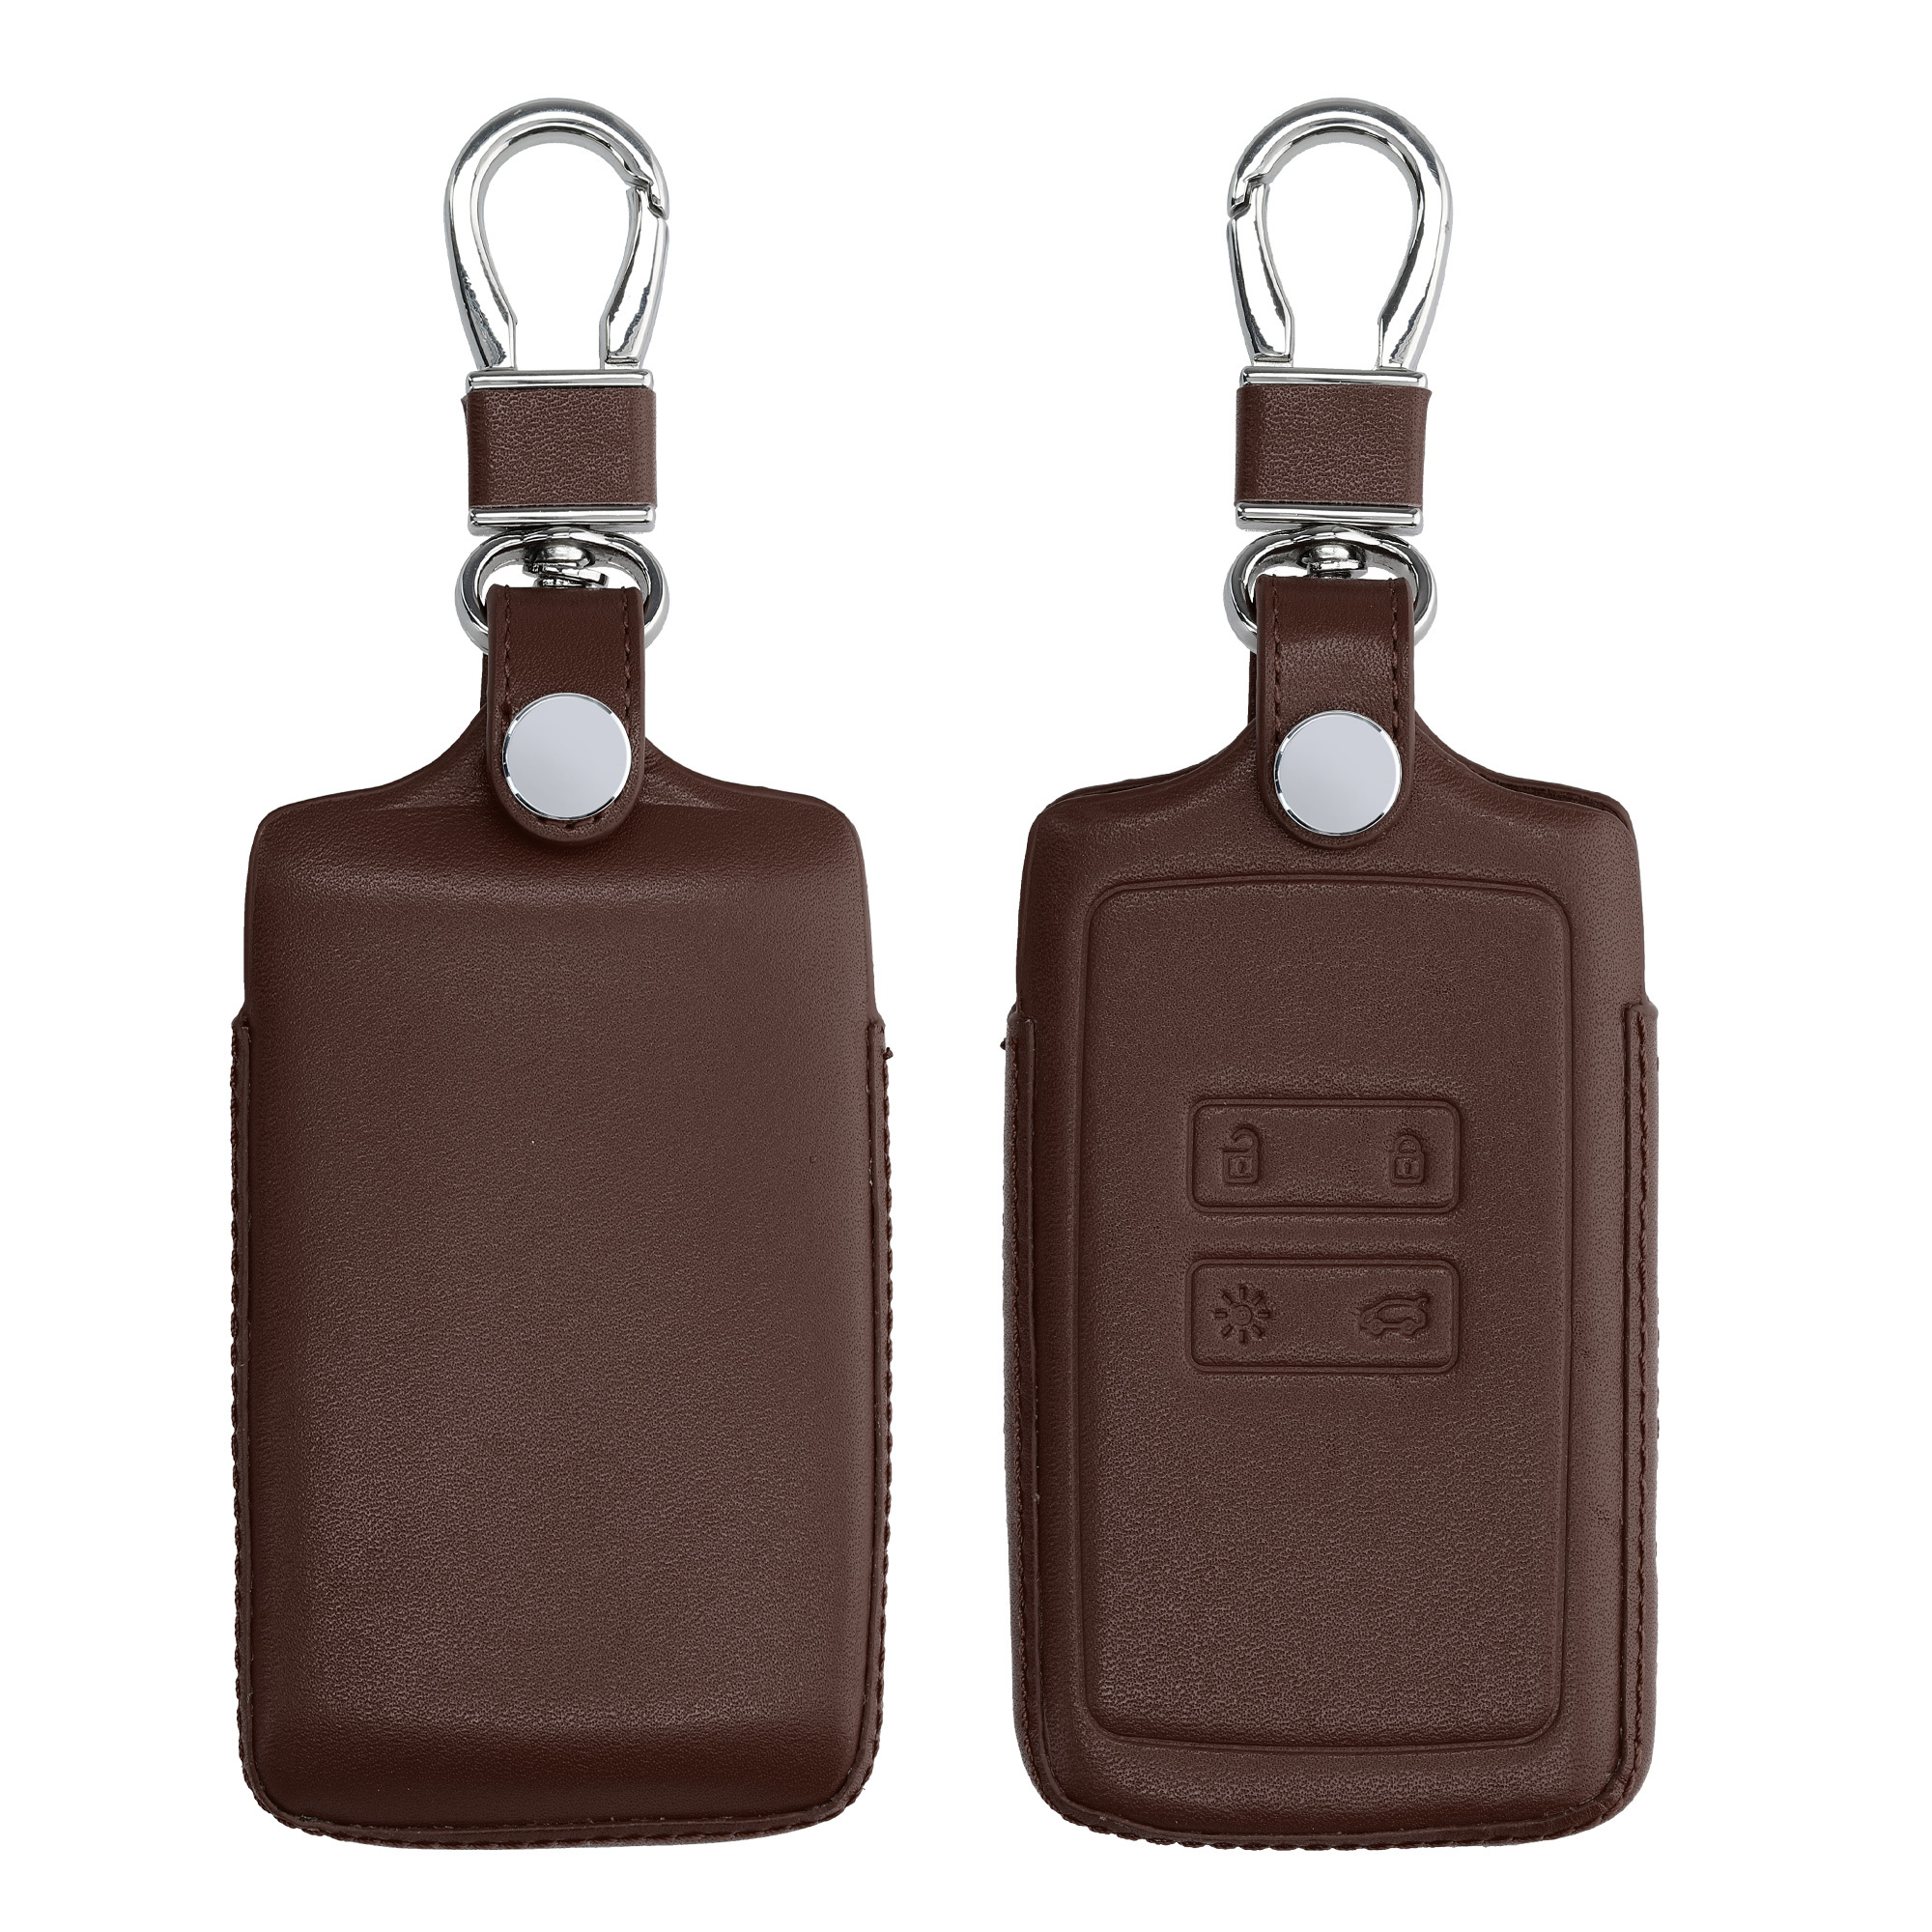 kwmobile Schlüsseltasche Autoschlüssel Hülle für VW Golf 7 MK7,  Schlüsselhülle Silikon Cover, KOMPATIBEL MIT: VW Golf 7 MK7 3-Tasten  Autoschlüssel